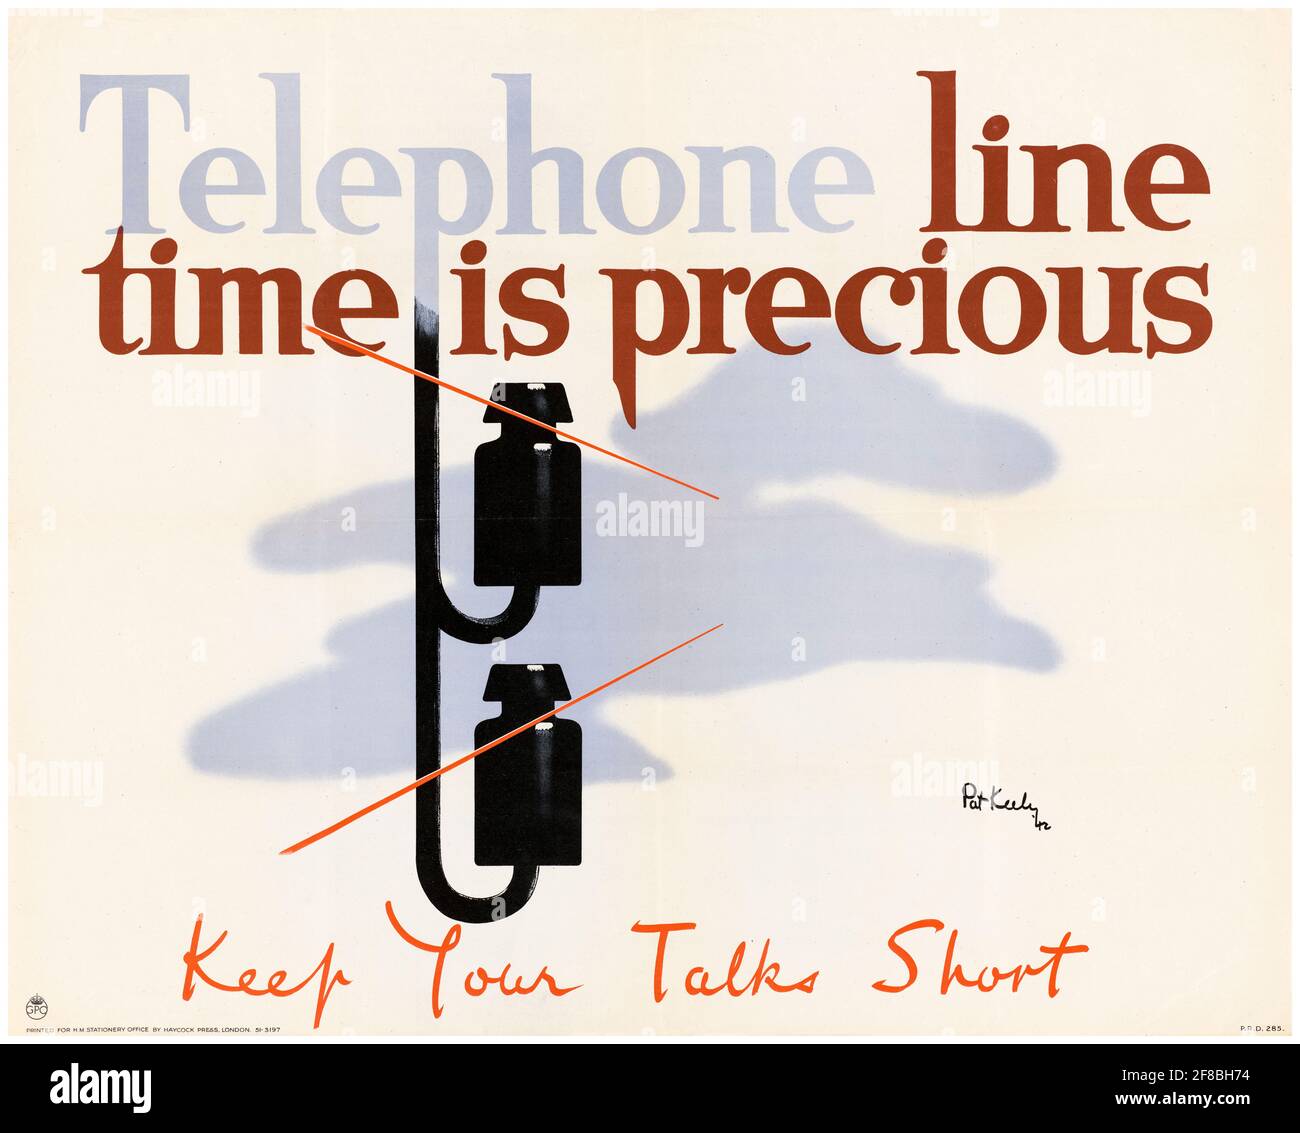 British, WW2 économiser des ressources affiche, téléphone temps de ligne est précieux, garder vos discussions courtes, 1942-1945 Banque D'Images